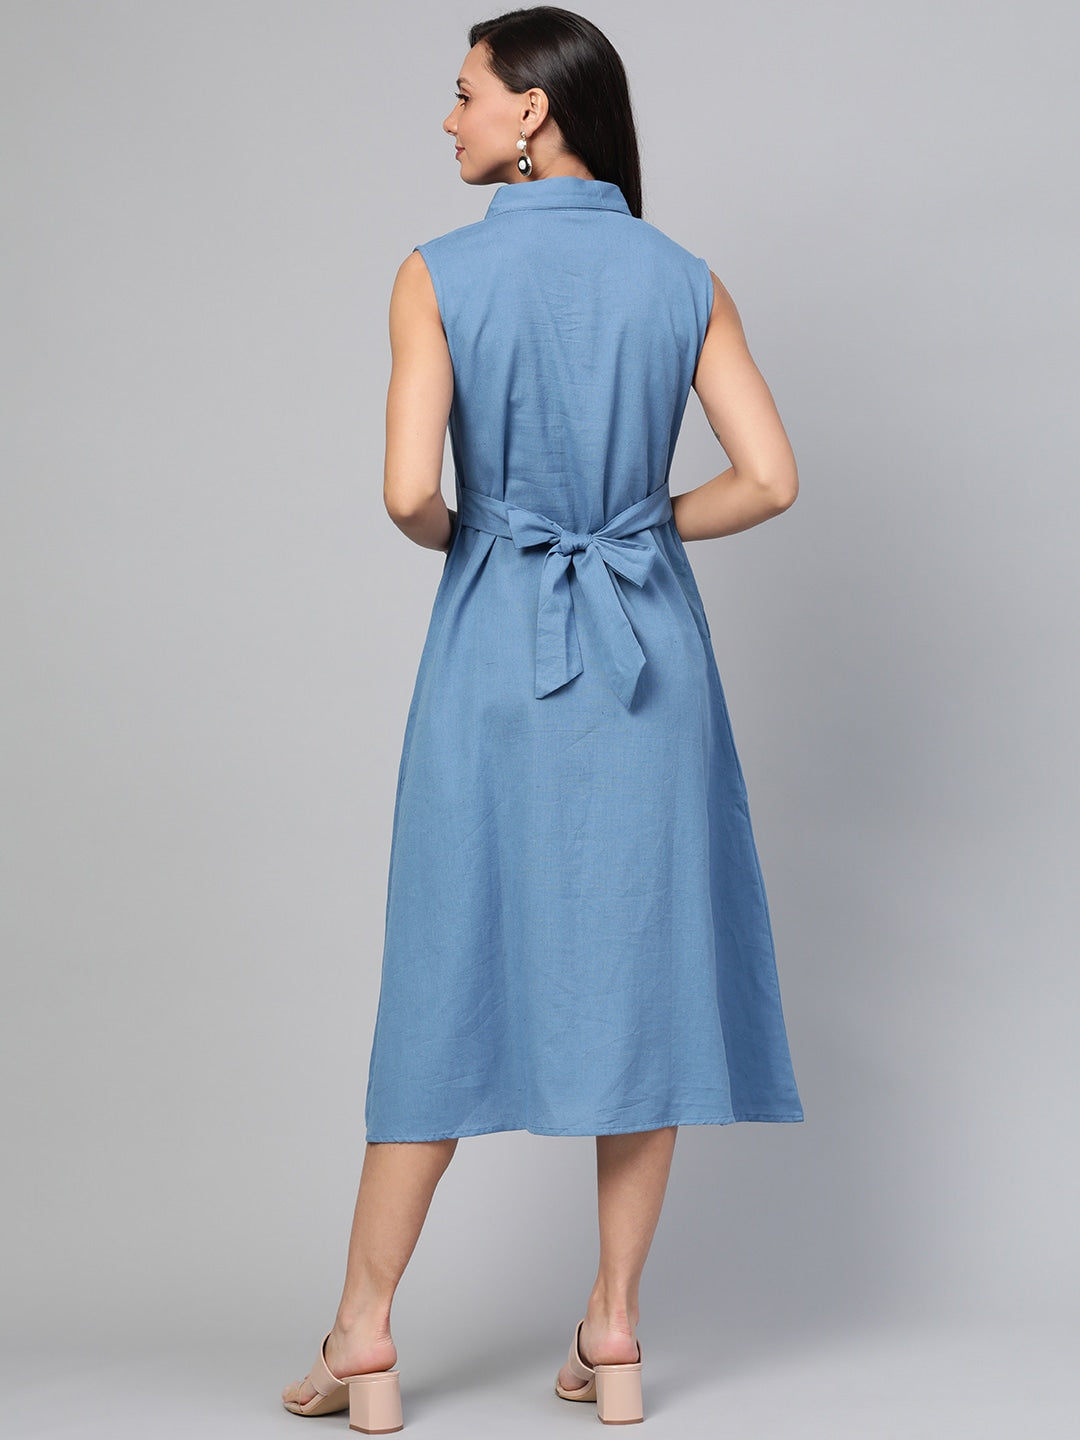 Blue Solid Dress-Yufta Store-7459DRSBLSS